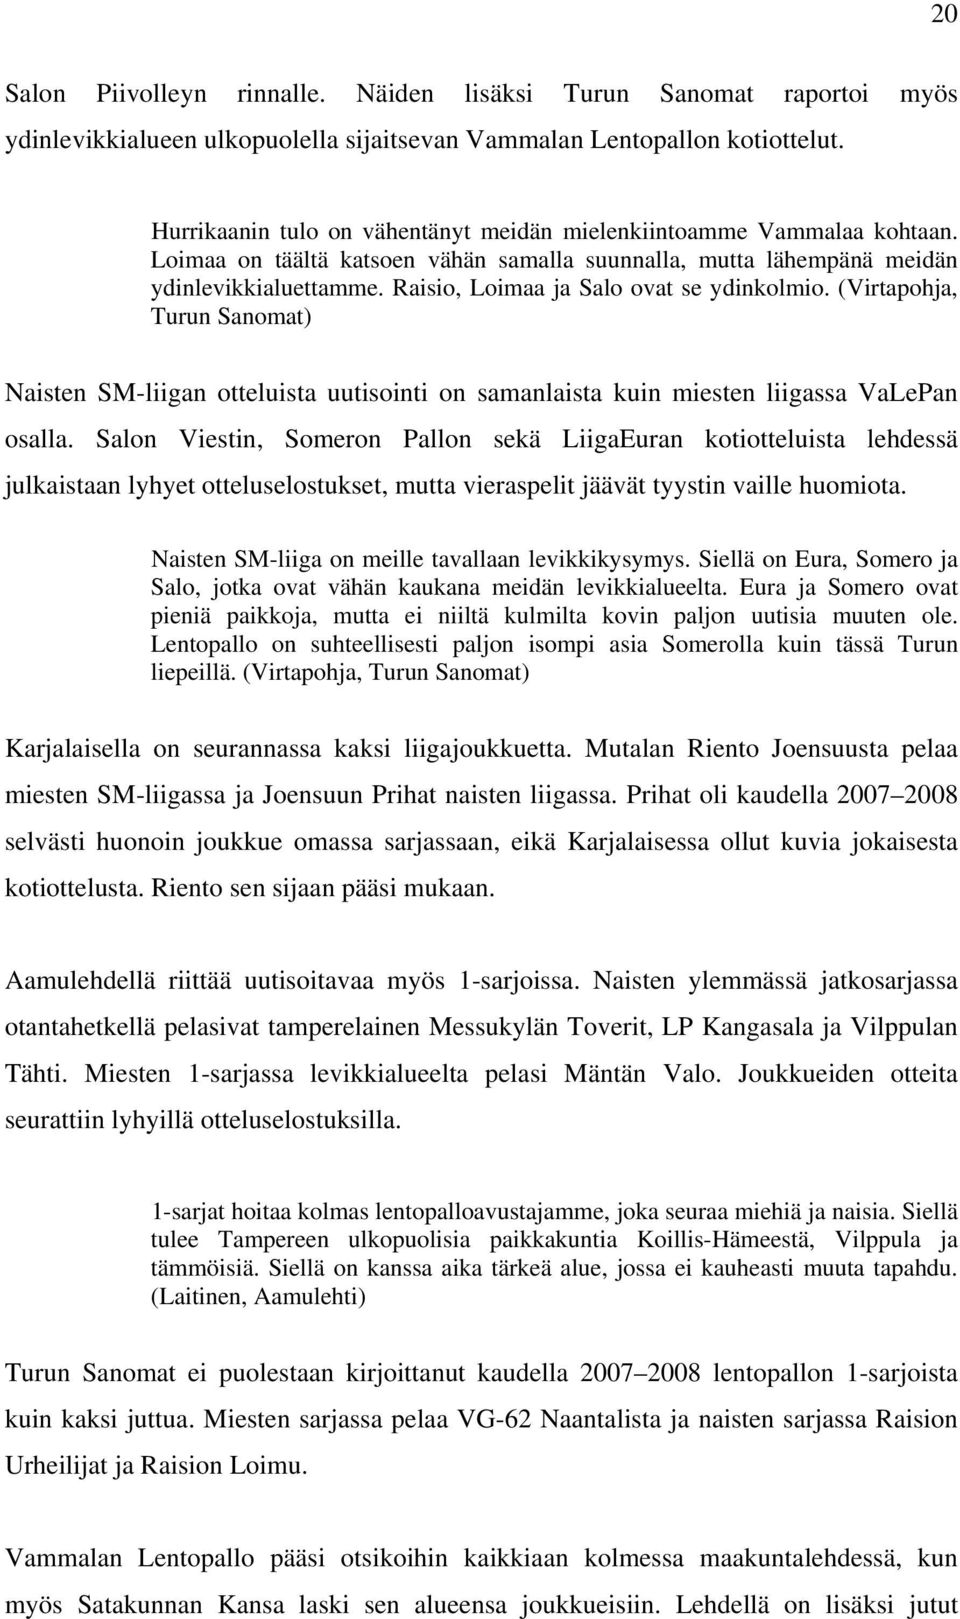 Raisio, Loimaa ja Salo ovat se ydinkolmio. (Virtapohja, Turun Sanomat) Naisten SM-liigan otteluista uutisointi on samanlaista kuin miesten liigassa VaLePan osalla.